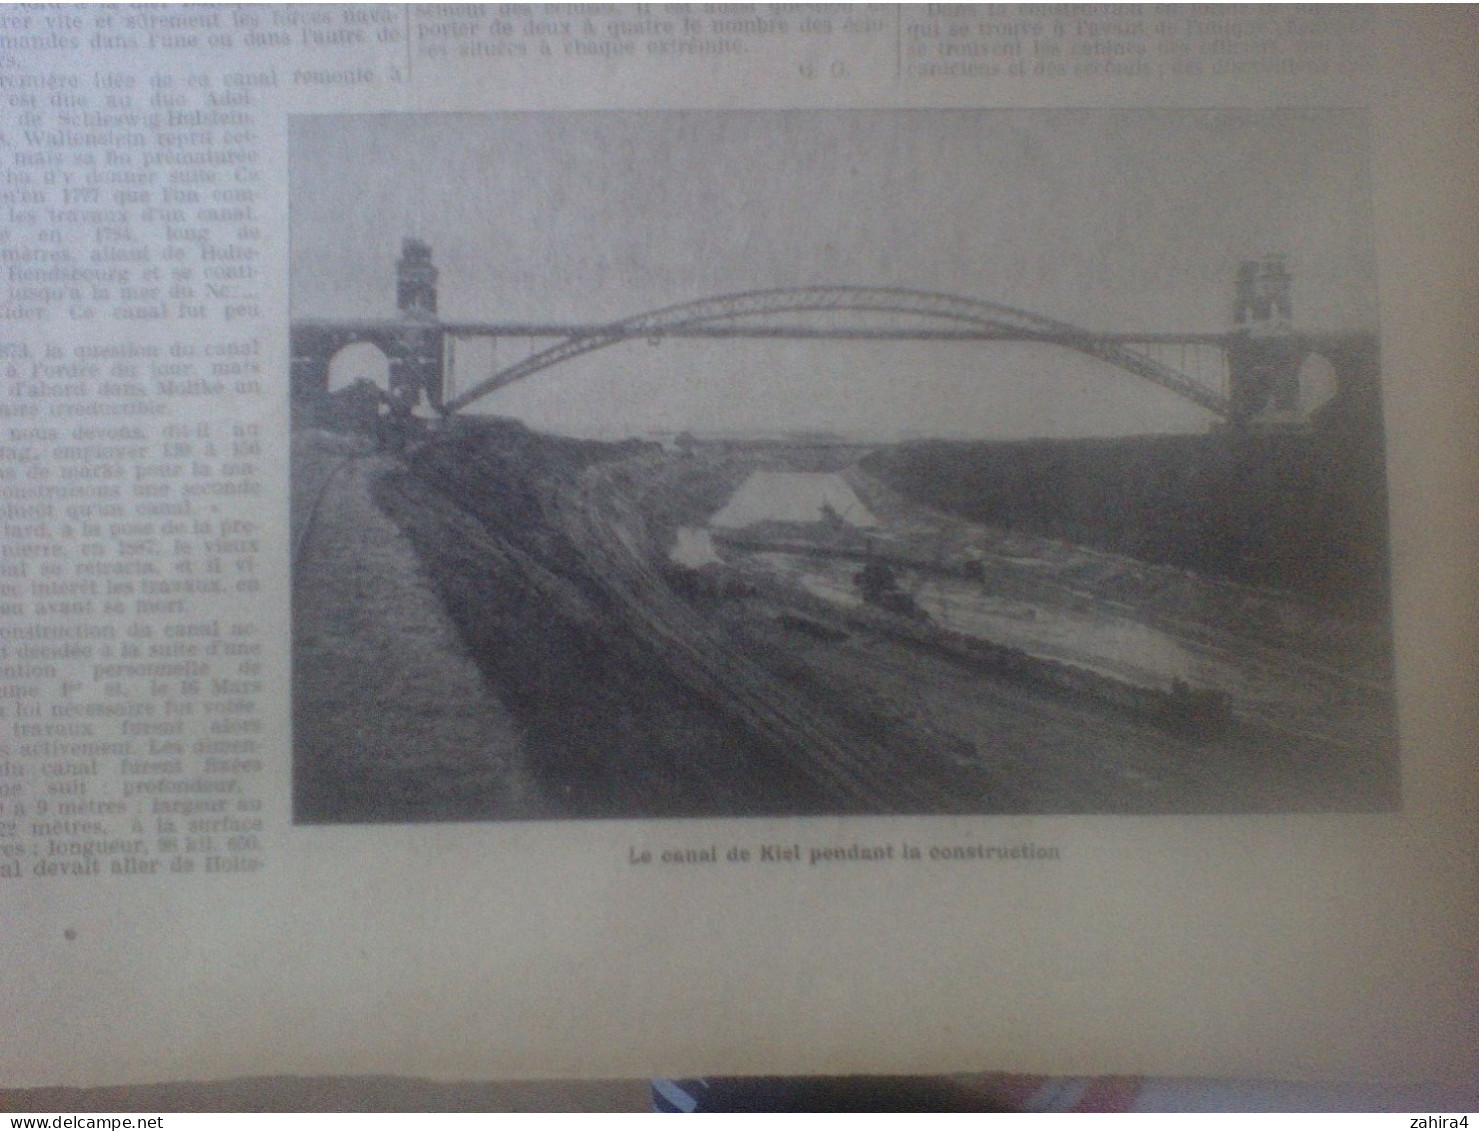 Petit Journal militair maritim colon 136 Sapeur-pompier Paris Douanier Roi Haakon Révolver America Canal Kiel N.Calédoni